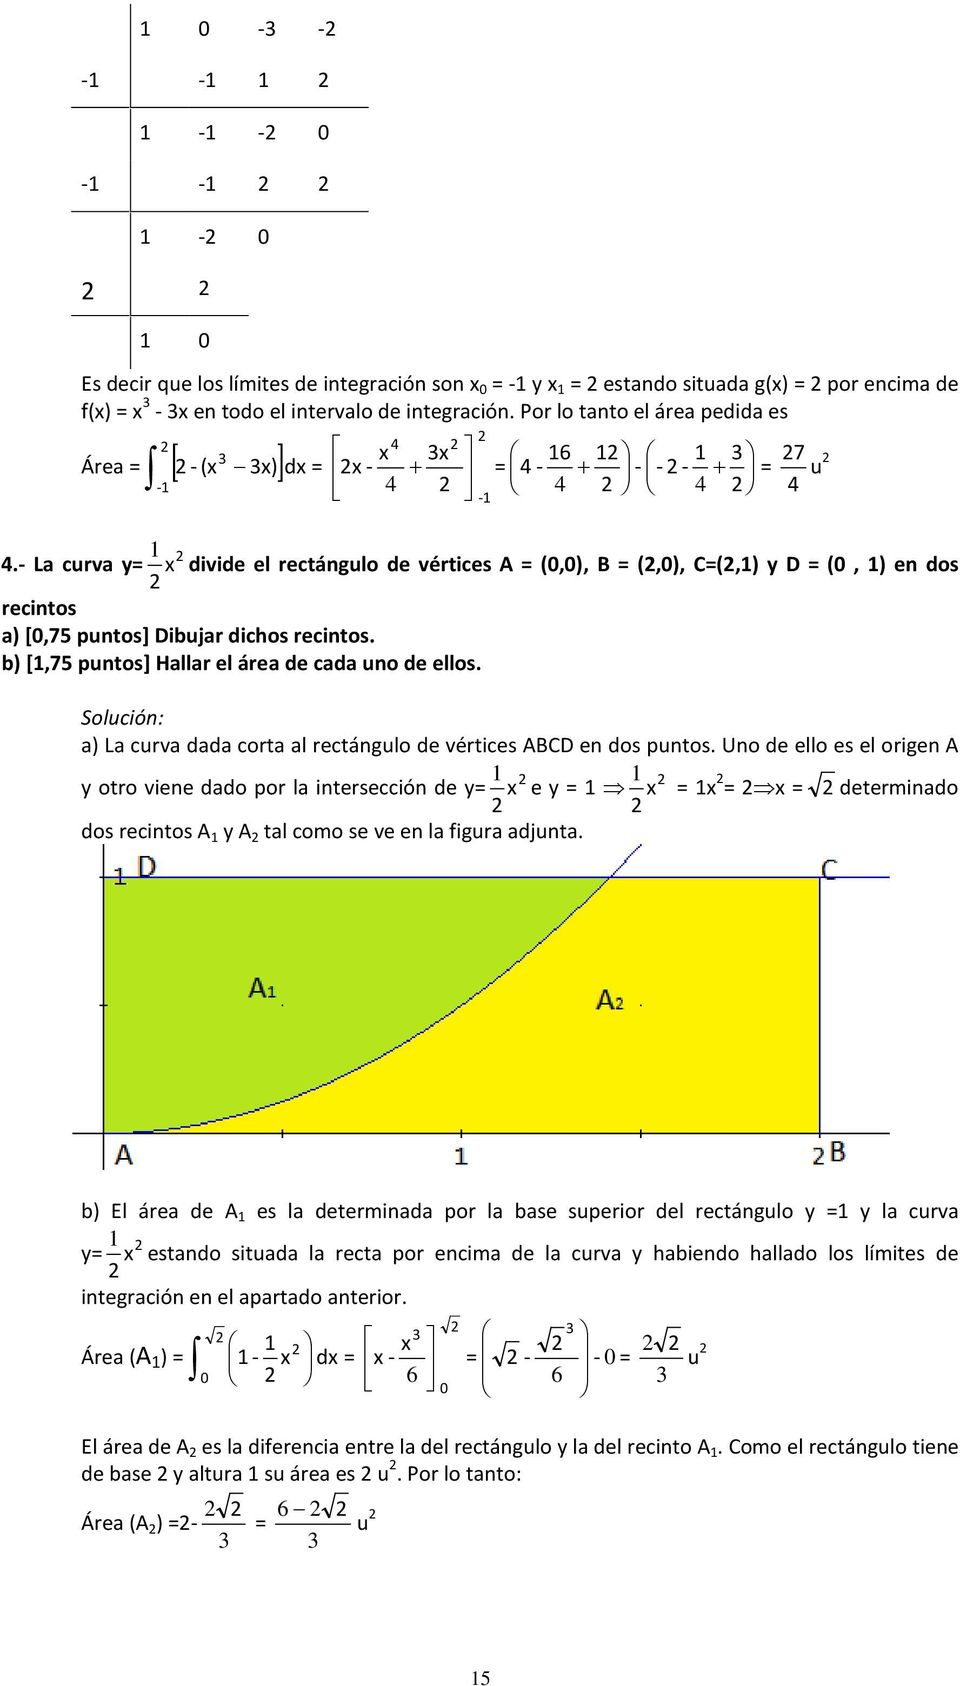 a) La curva dada corta al rectángulo de vértices ABCD en dos puntos.